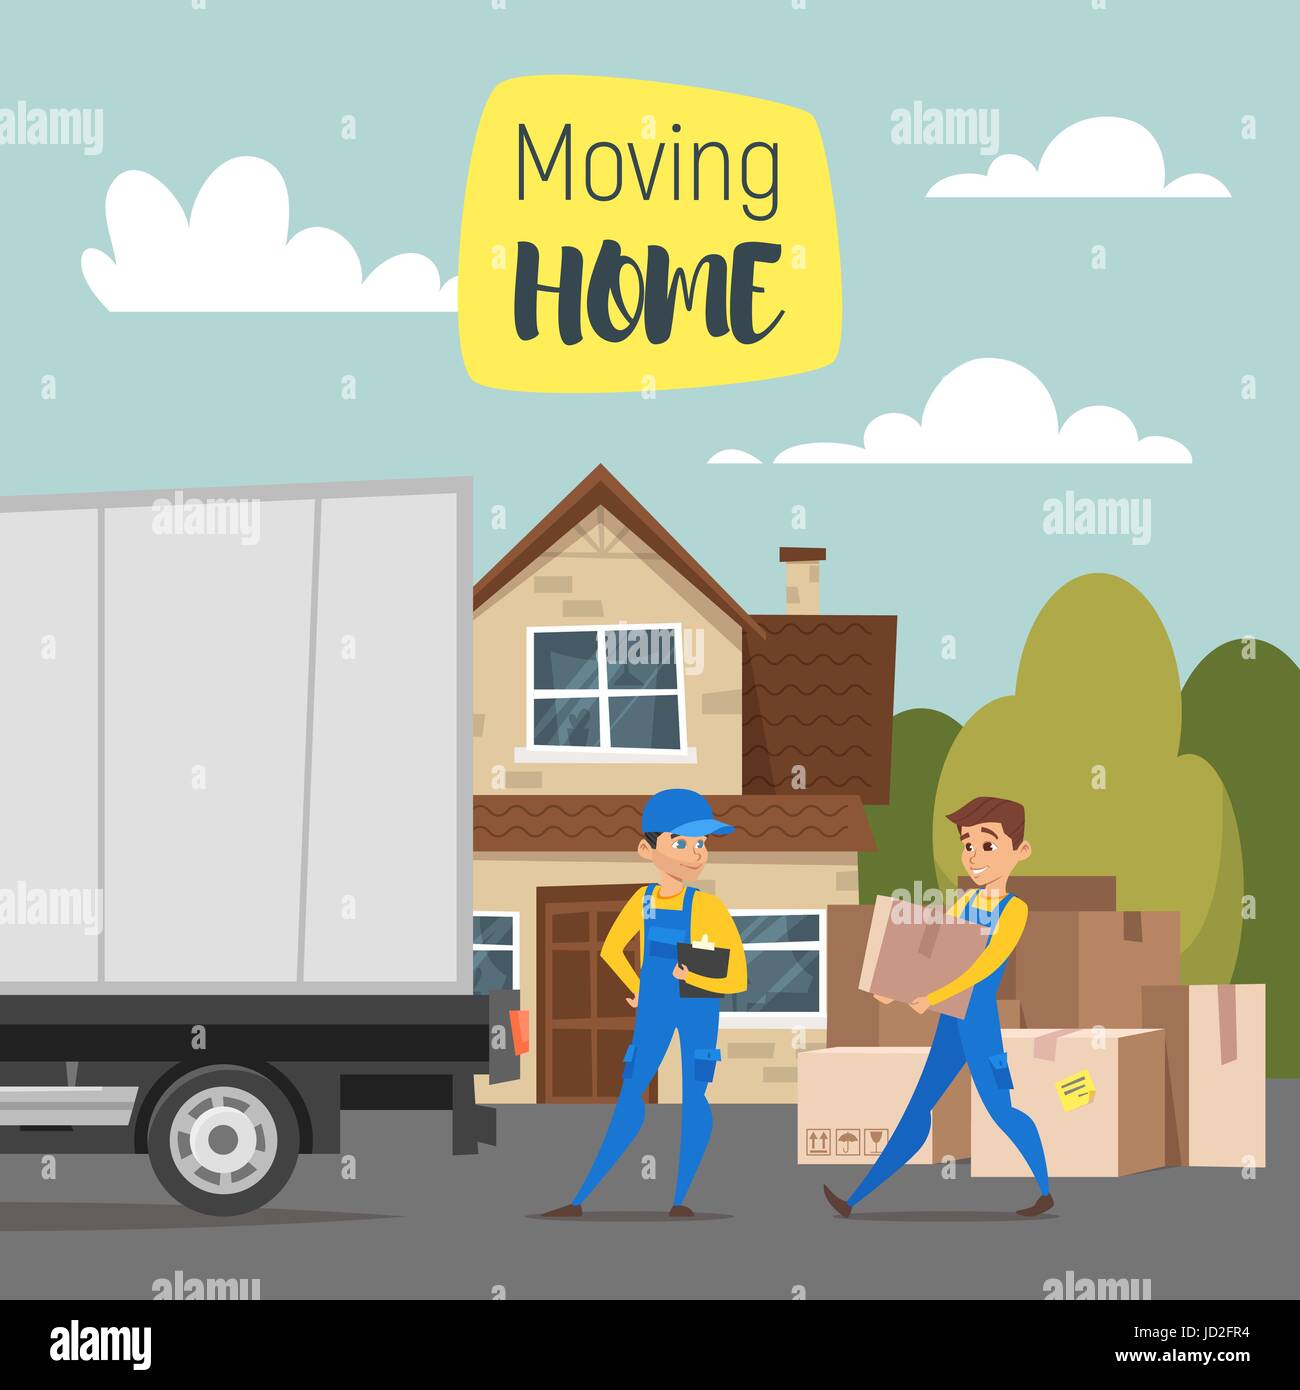 Vektorgrafik-Cartoon-Stil der Lader Mover Mann tragen Kartons. Haus, Pappschachteln und einem LKW. Konzept für das Haus zu bewegen. Stock Vektor